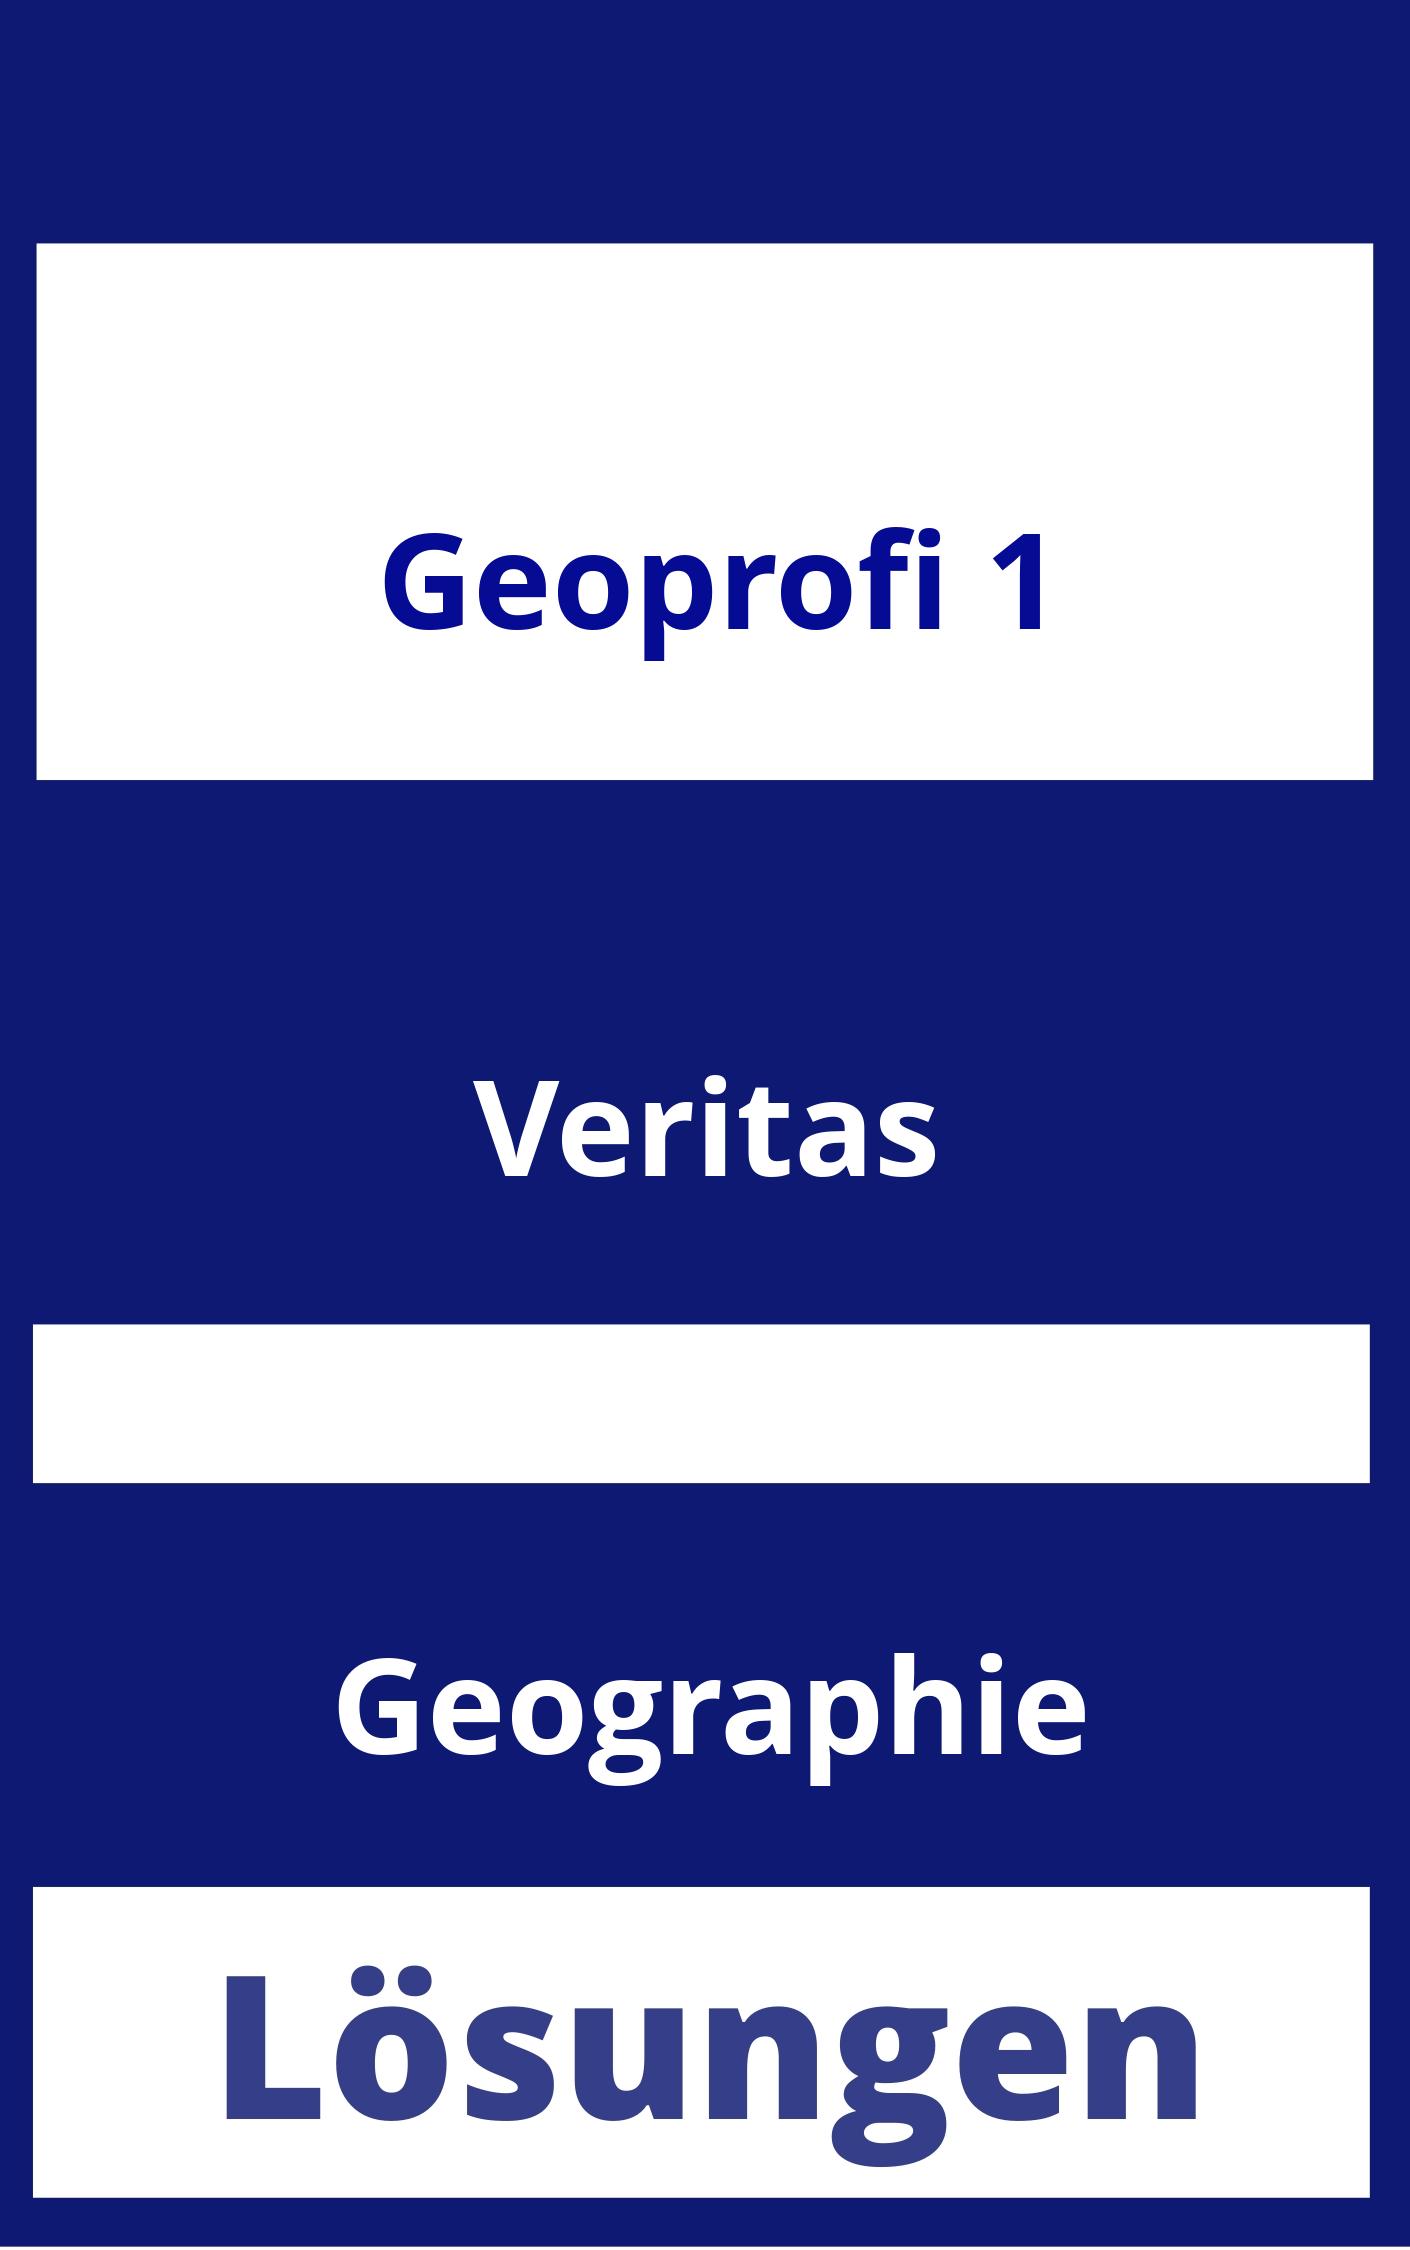 GEOprofi 1